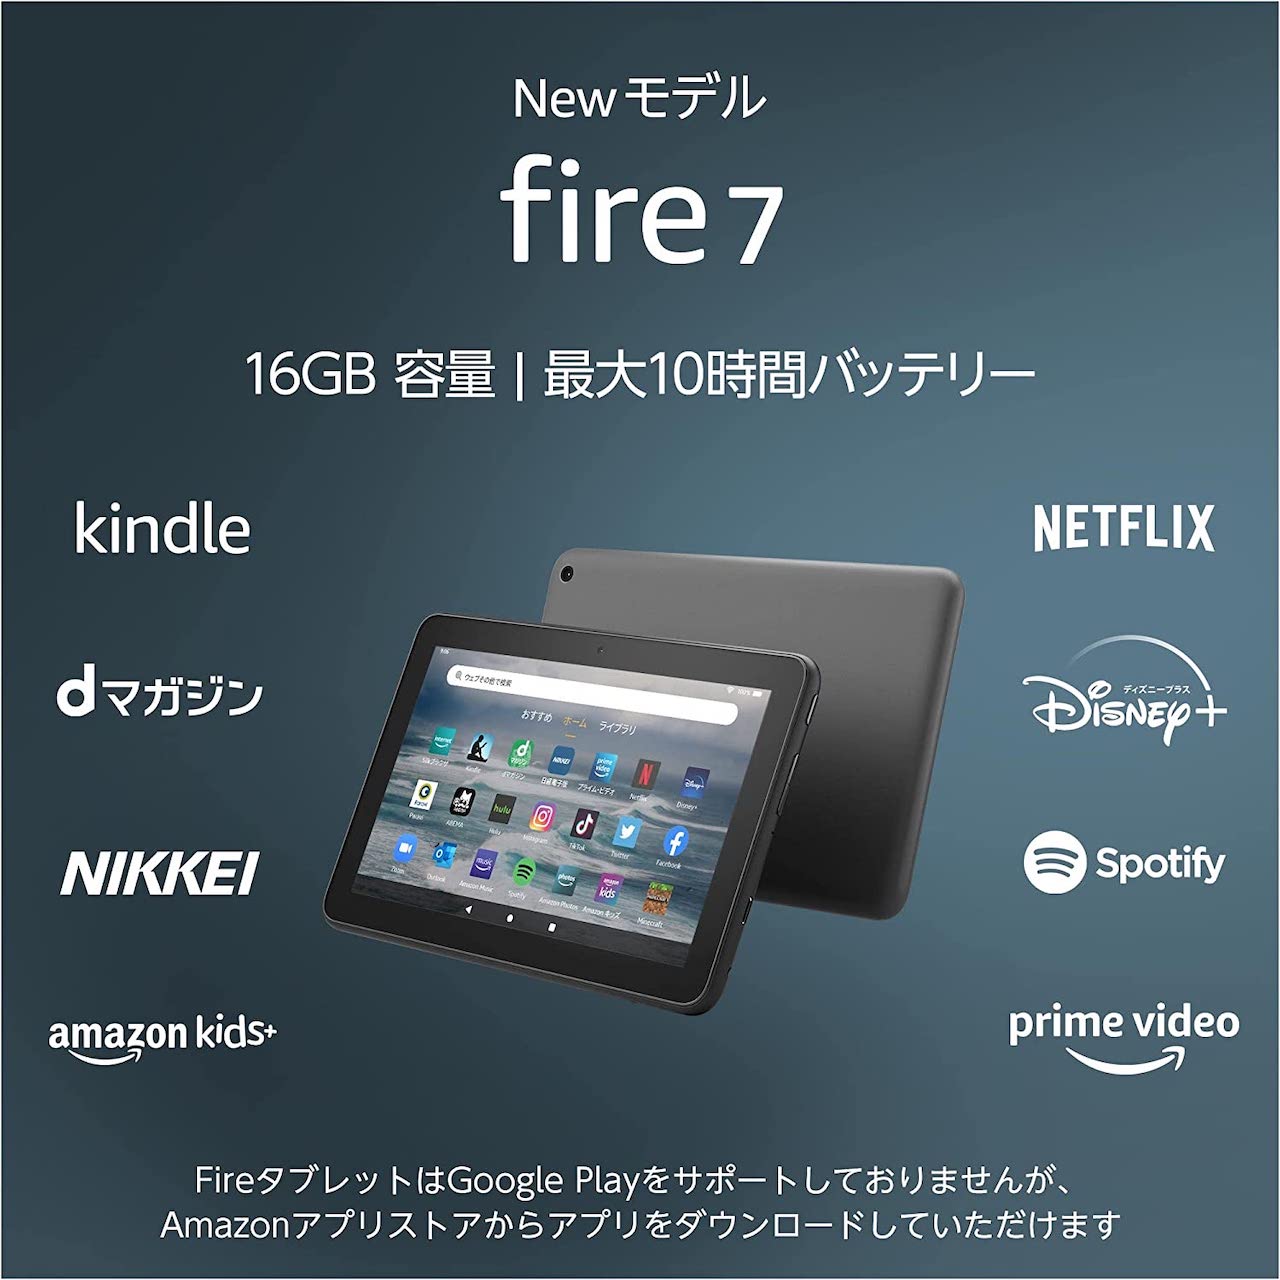 Fire 7